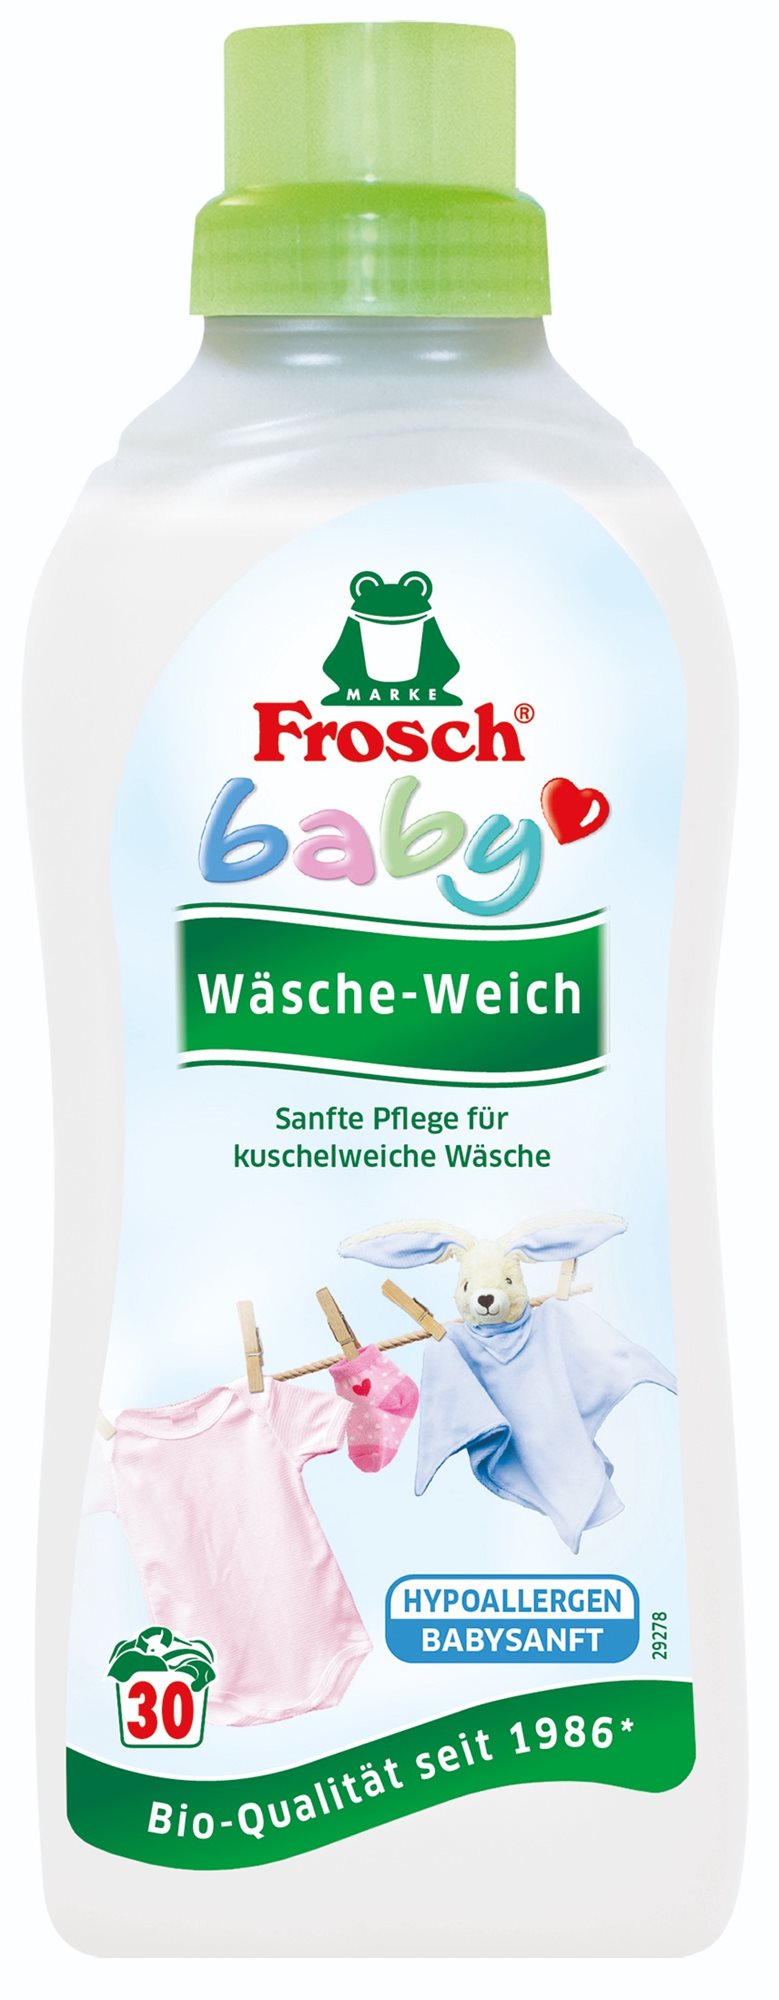 Öko-mosógél FROSCH EKO Baby hipoallergén folyékony öblítőszer csecsemő- és gyerekruhákhoz 750 ml